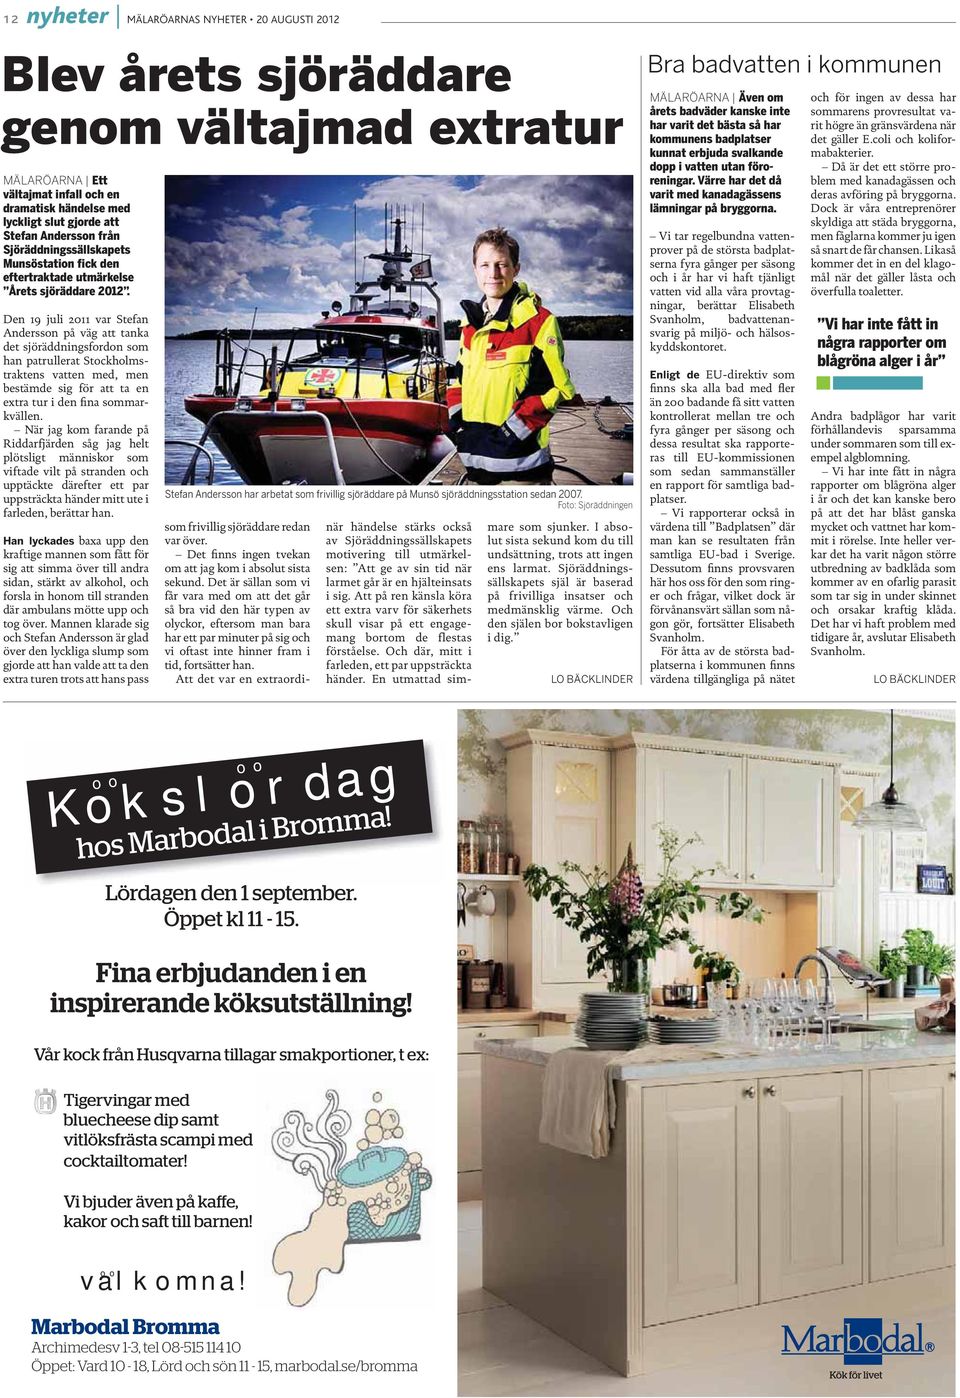 Den 19 juli 2011 var Stefan Andersson på väg att tanka det sjöräddningsfordon som han patrullerat Stockholmstraktens vatten med, men bestämde sig för att ta en extra tur i den fina sommarkvällen.